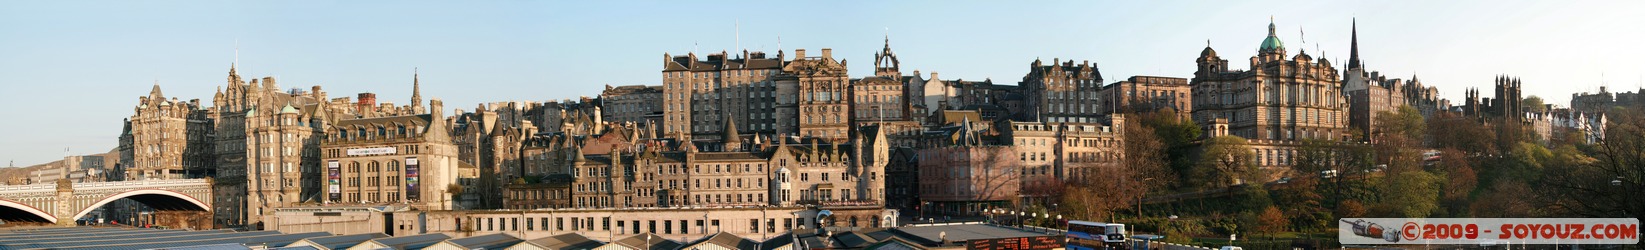 Edinburgh - Old Town - Panorama
Mots-clés: sunset panorama patrimoine unesco